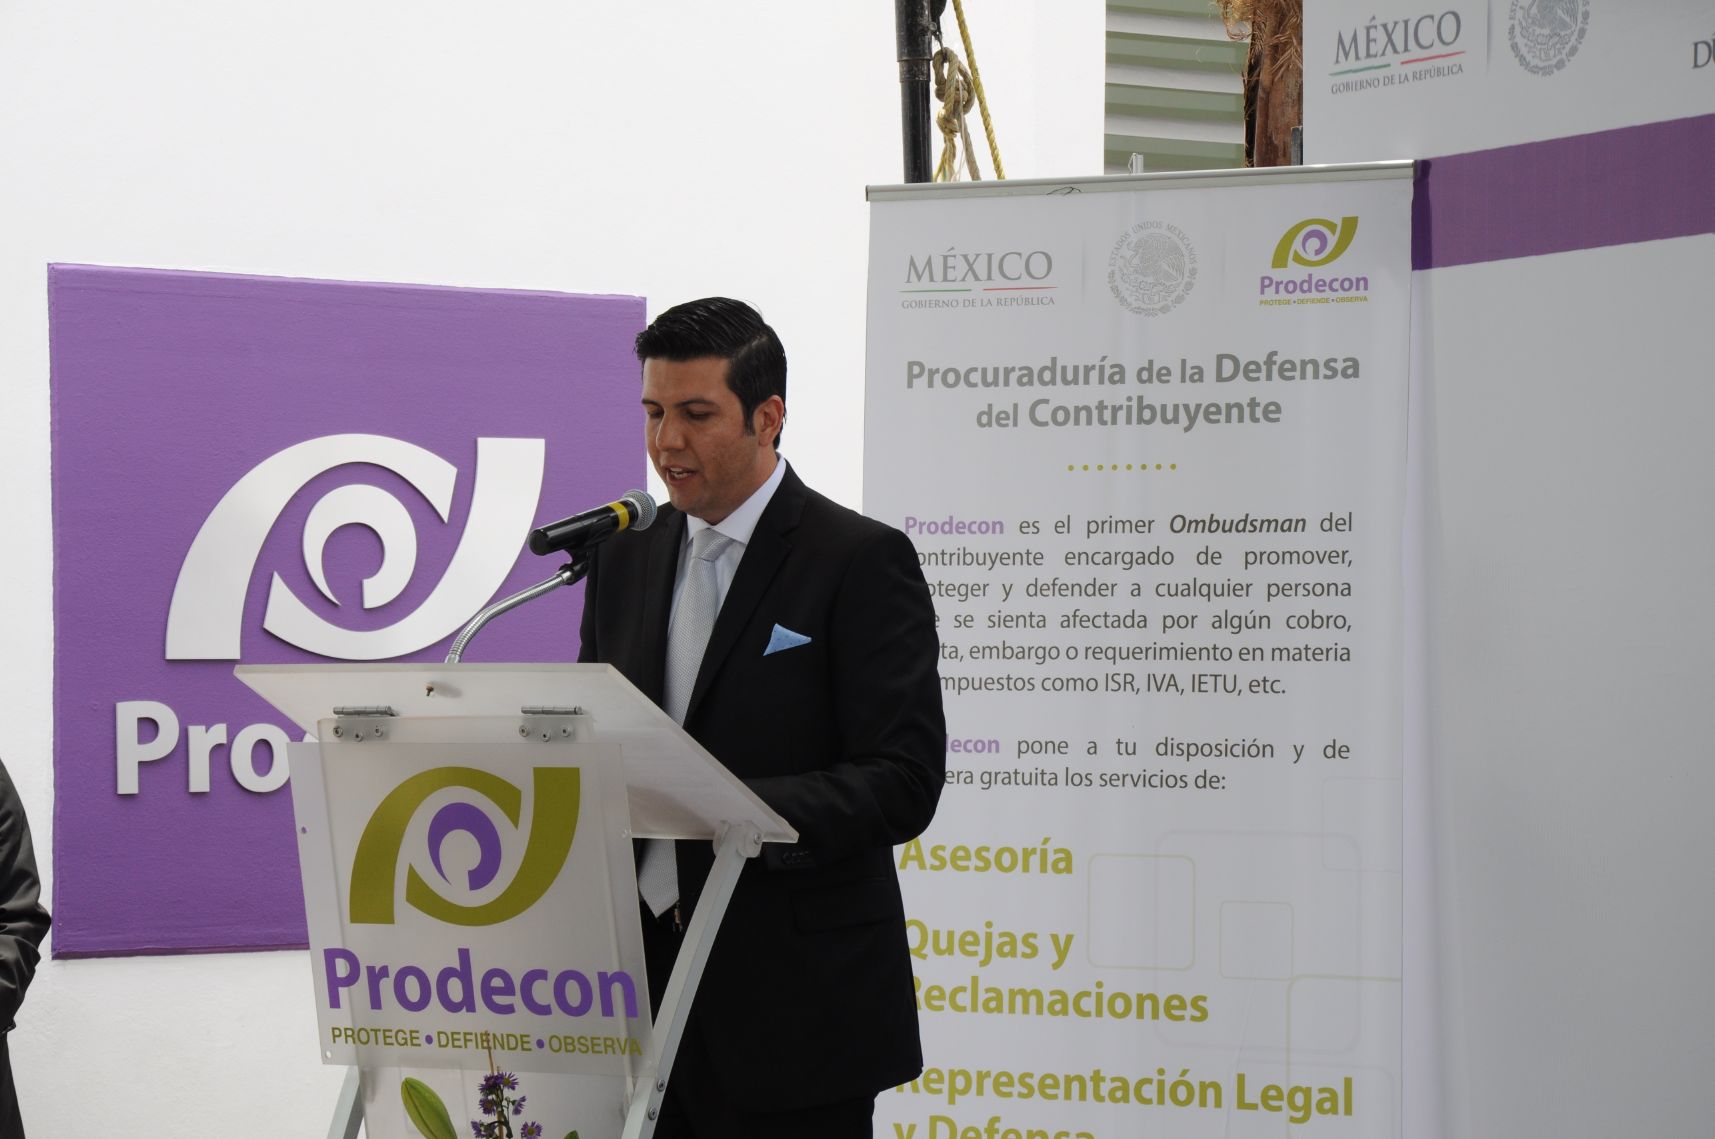 Con la inauguración de la Delegación Durango de Prodecon, los pagadores de impuestos en la entidad, tendrán una nueva sede para la preservación, defensa y protección de sus derechos, afirmó su titular Héctor Peña Herrera.